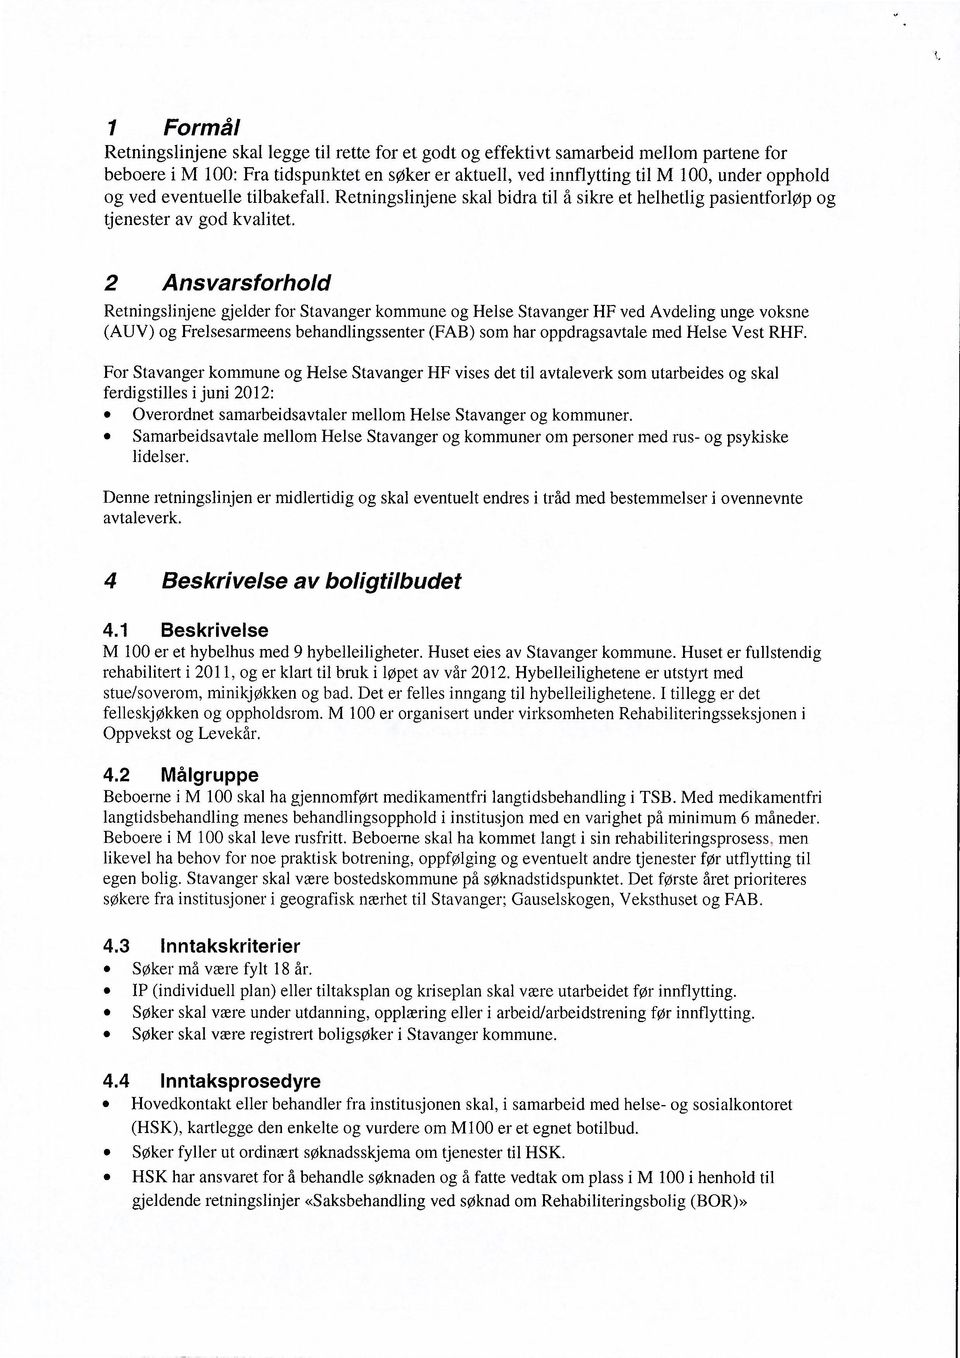 2 Ansvarsforhold Retningslinjene gjelder for Stavanger kommune og Helse Stavanger HF ved Avdeling unge voksne (AUV) og Frelsesarmeens behandlingssenter (FAB) som har oppdragsavtale med Helse Vest RHF.